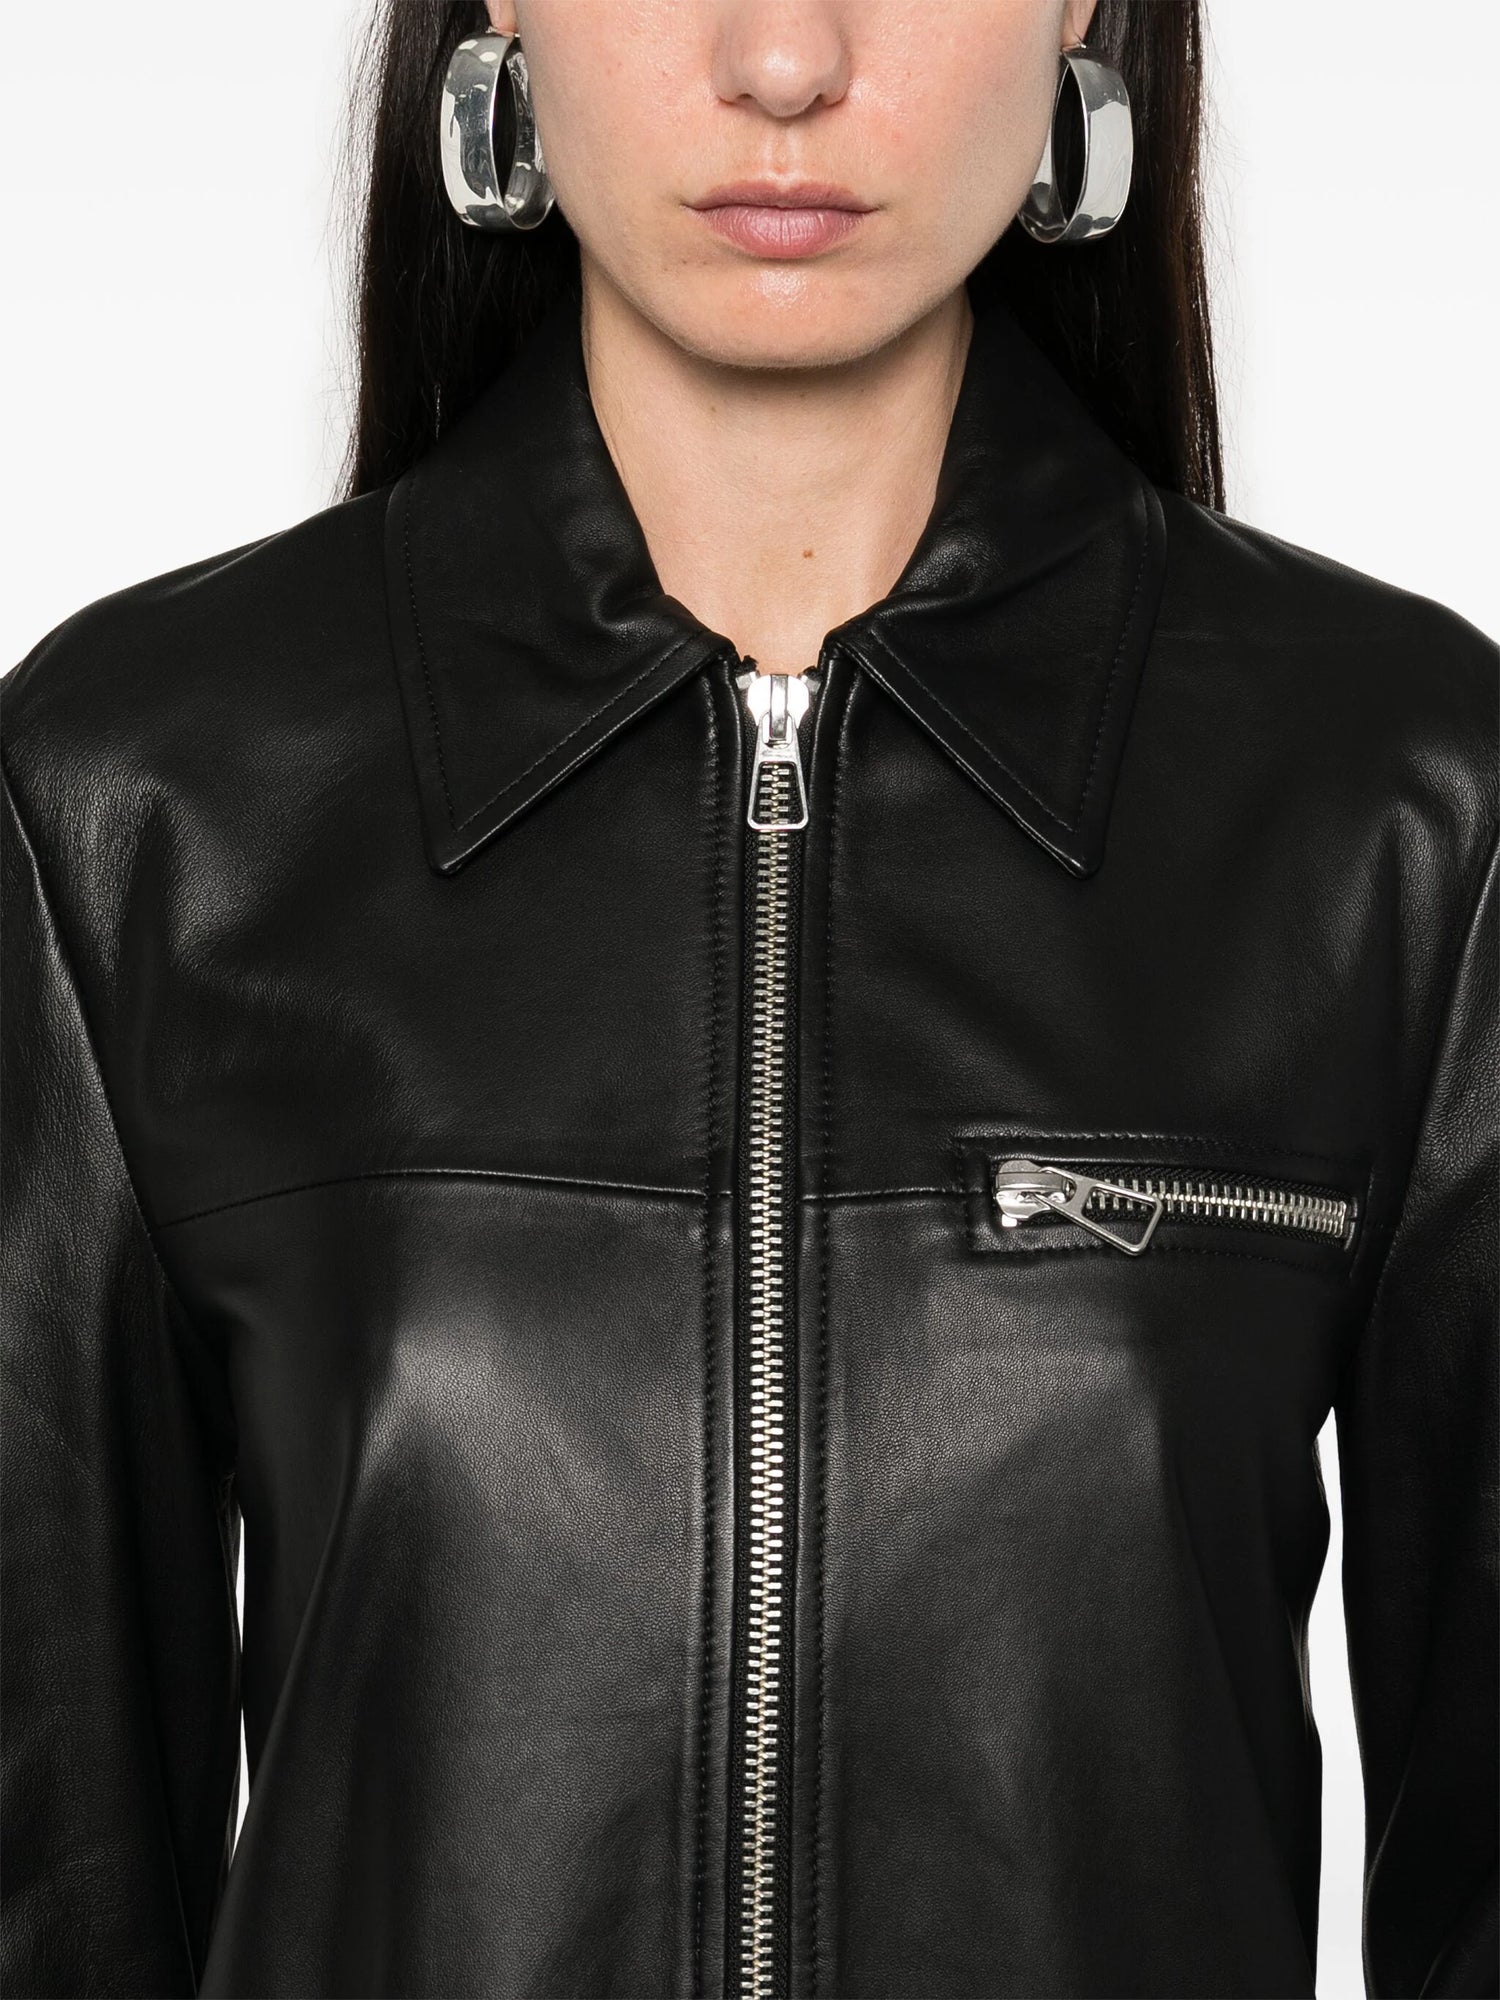 GEL leather jacket, black